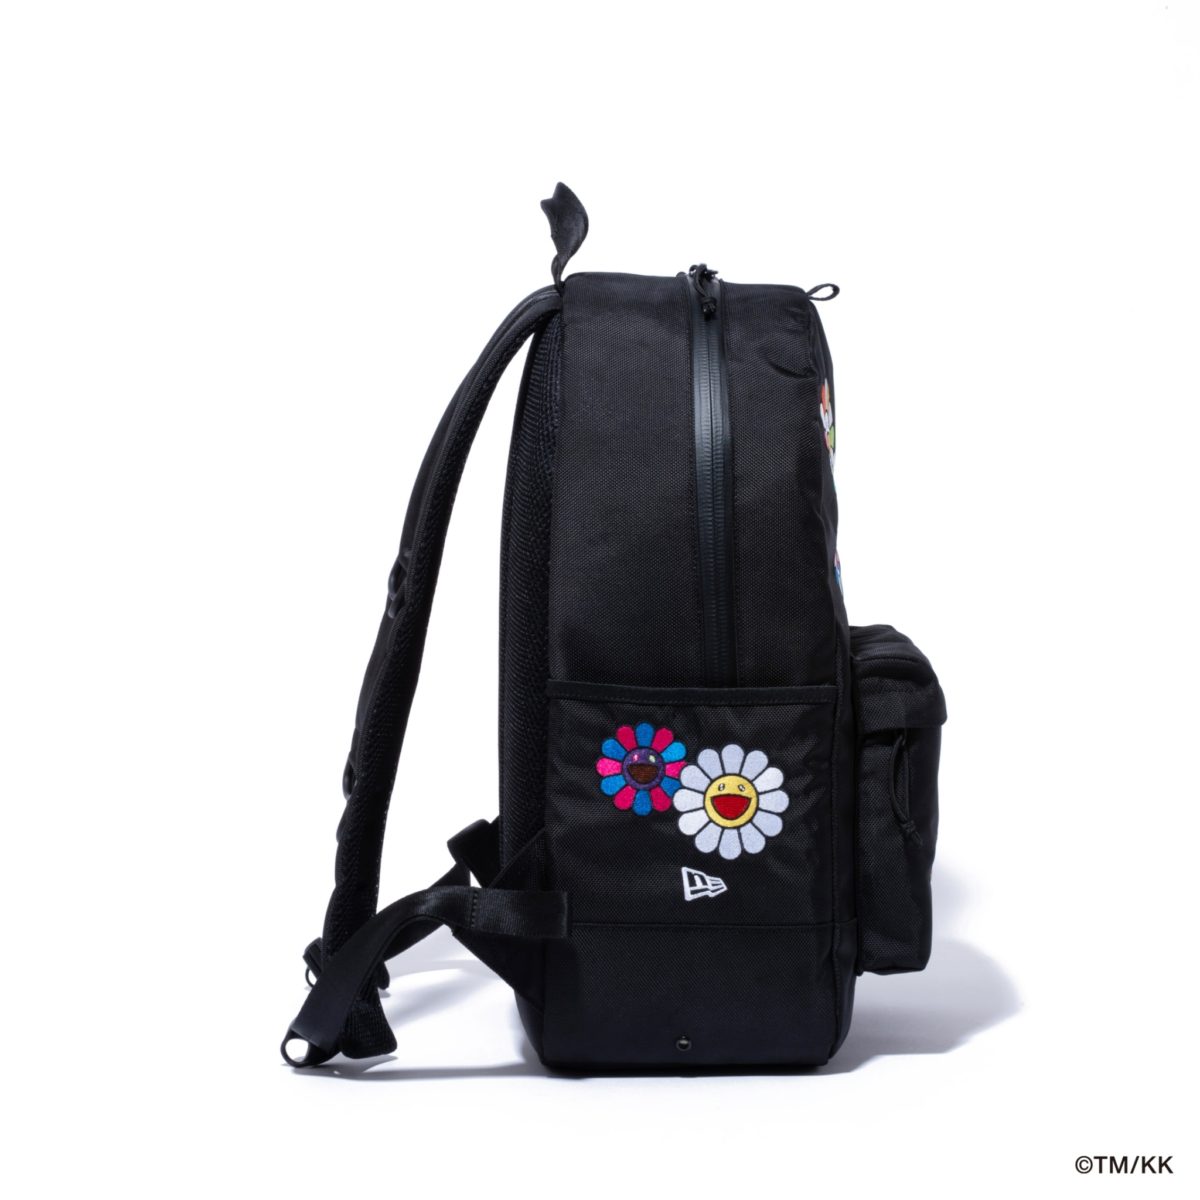 RareFinds - Murakami Sunflower Backpack Onhand and Available # takashimurakami #murakami